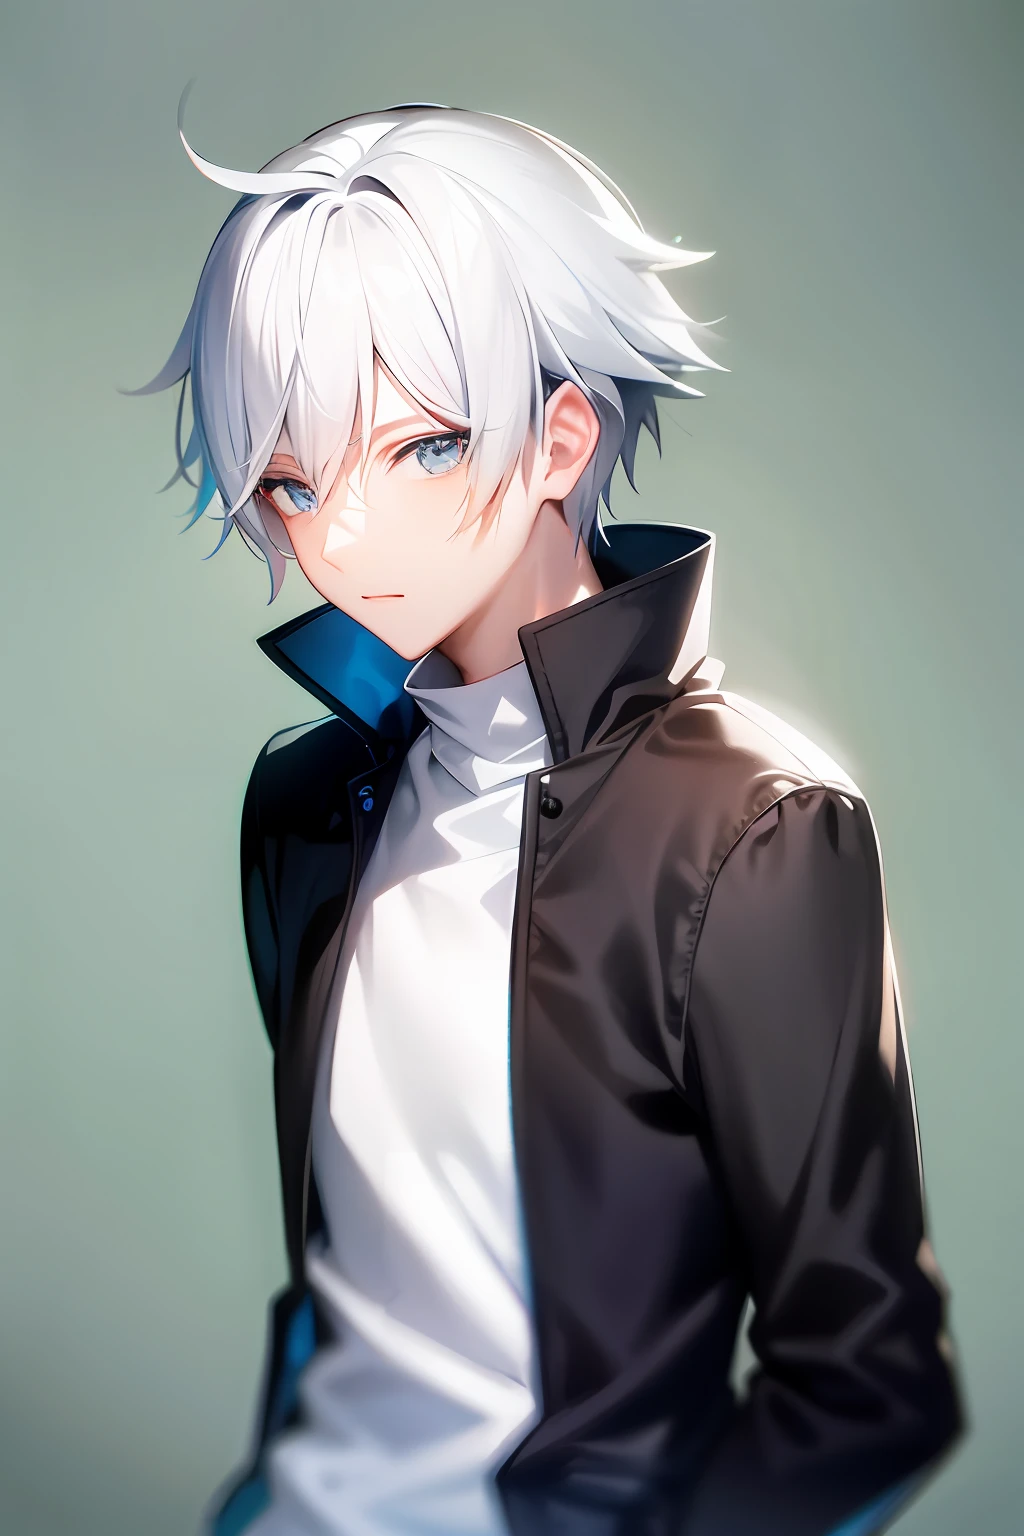 Симпатичный главный герой аниме с белыми волосами